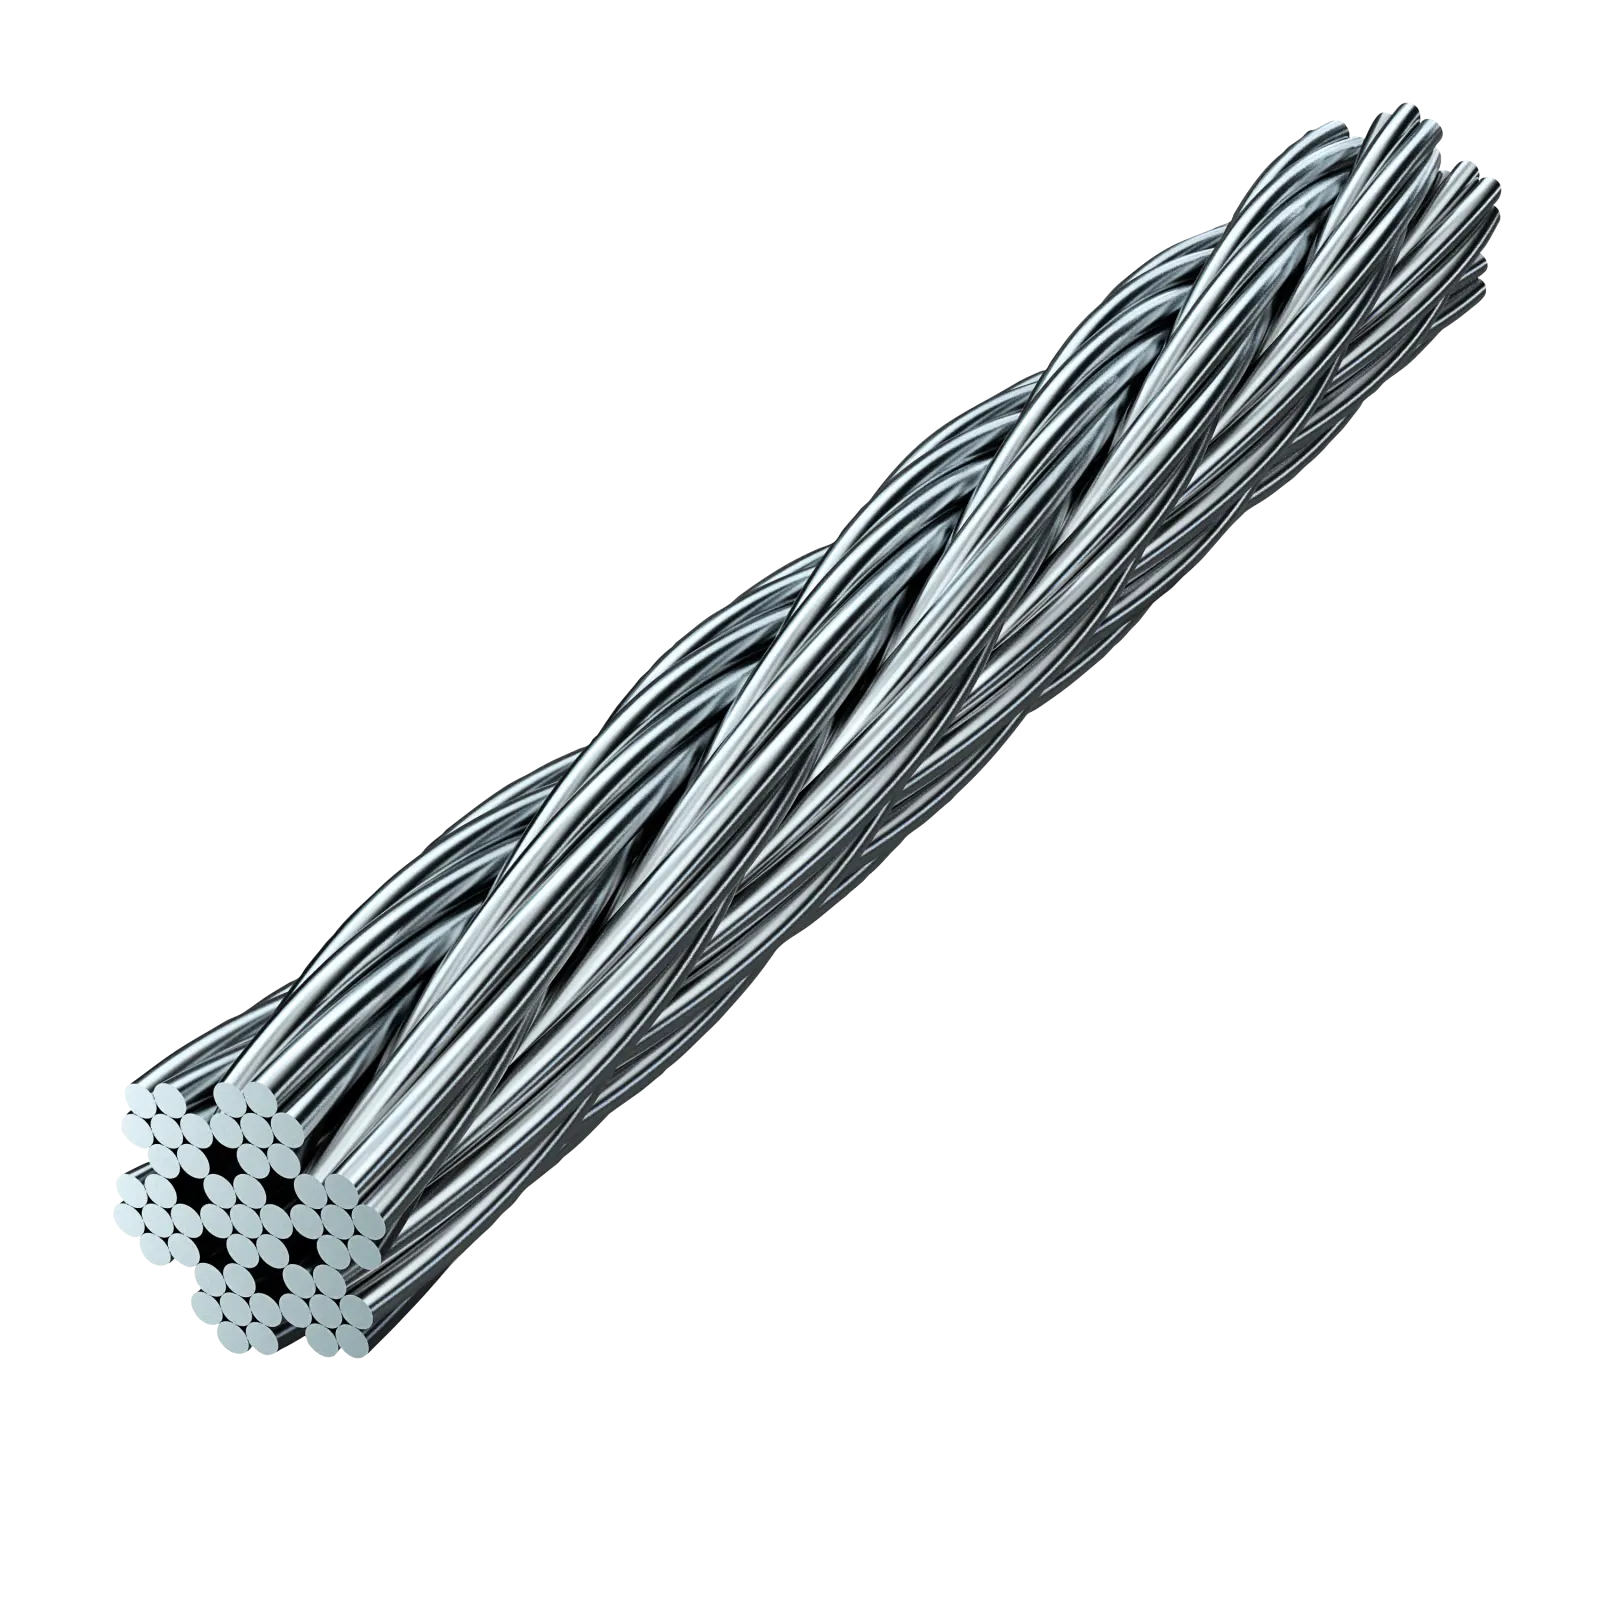 Câble électrique robuste de 8mm, 7x7, assemblage de câbles en acier inoxydable, quelle que soit la longueur